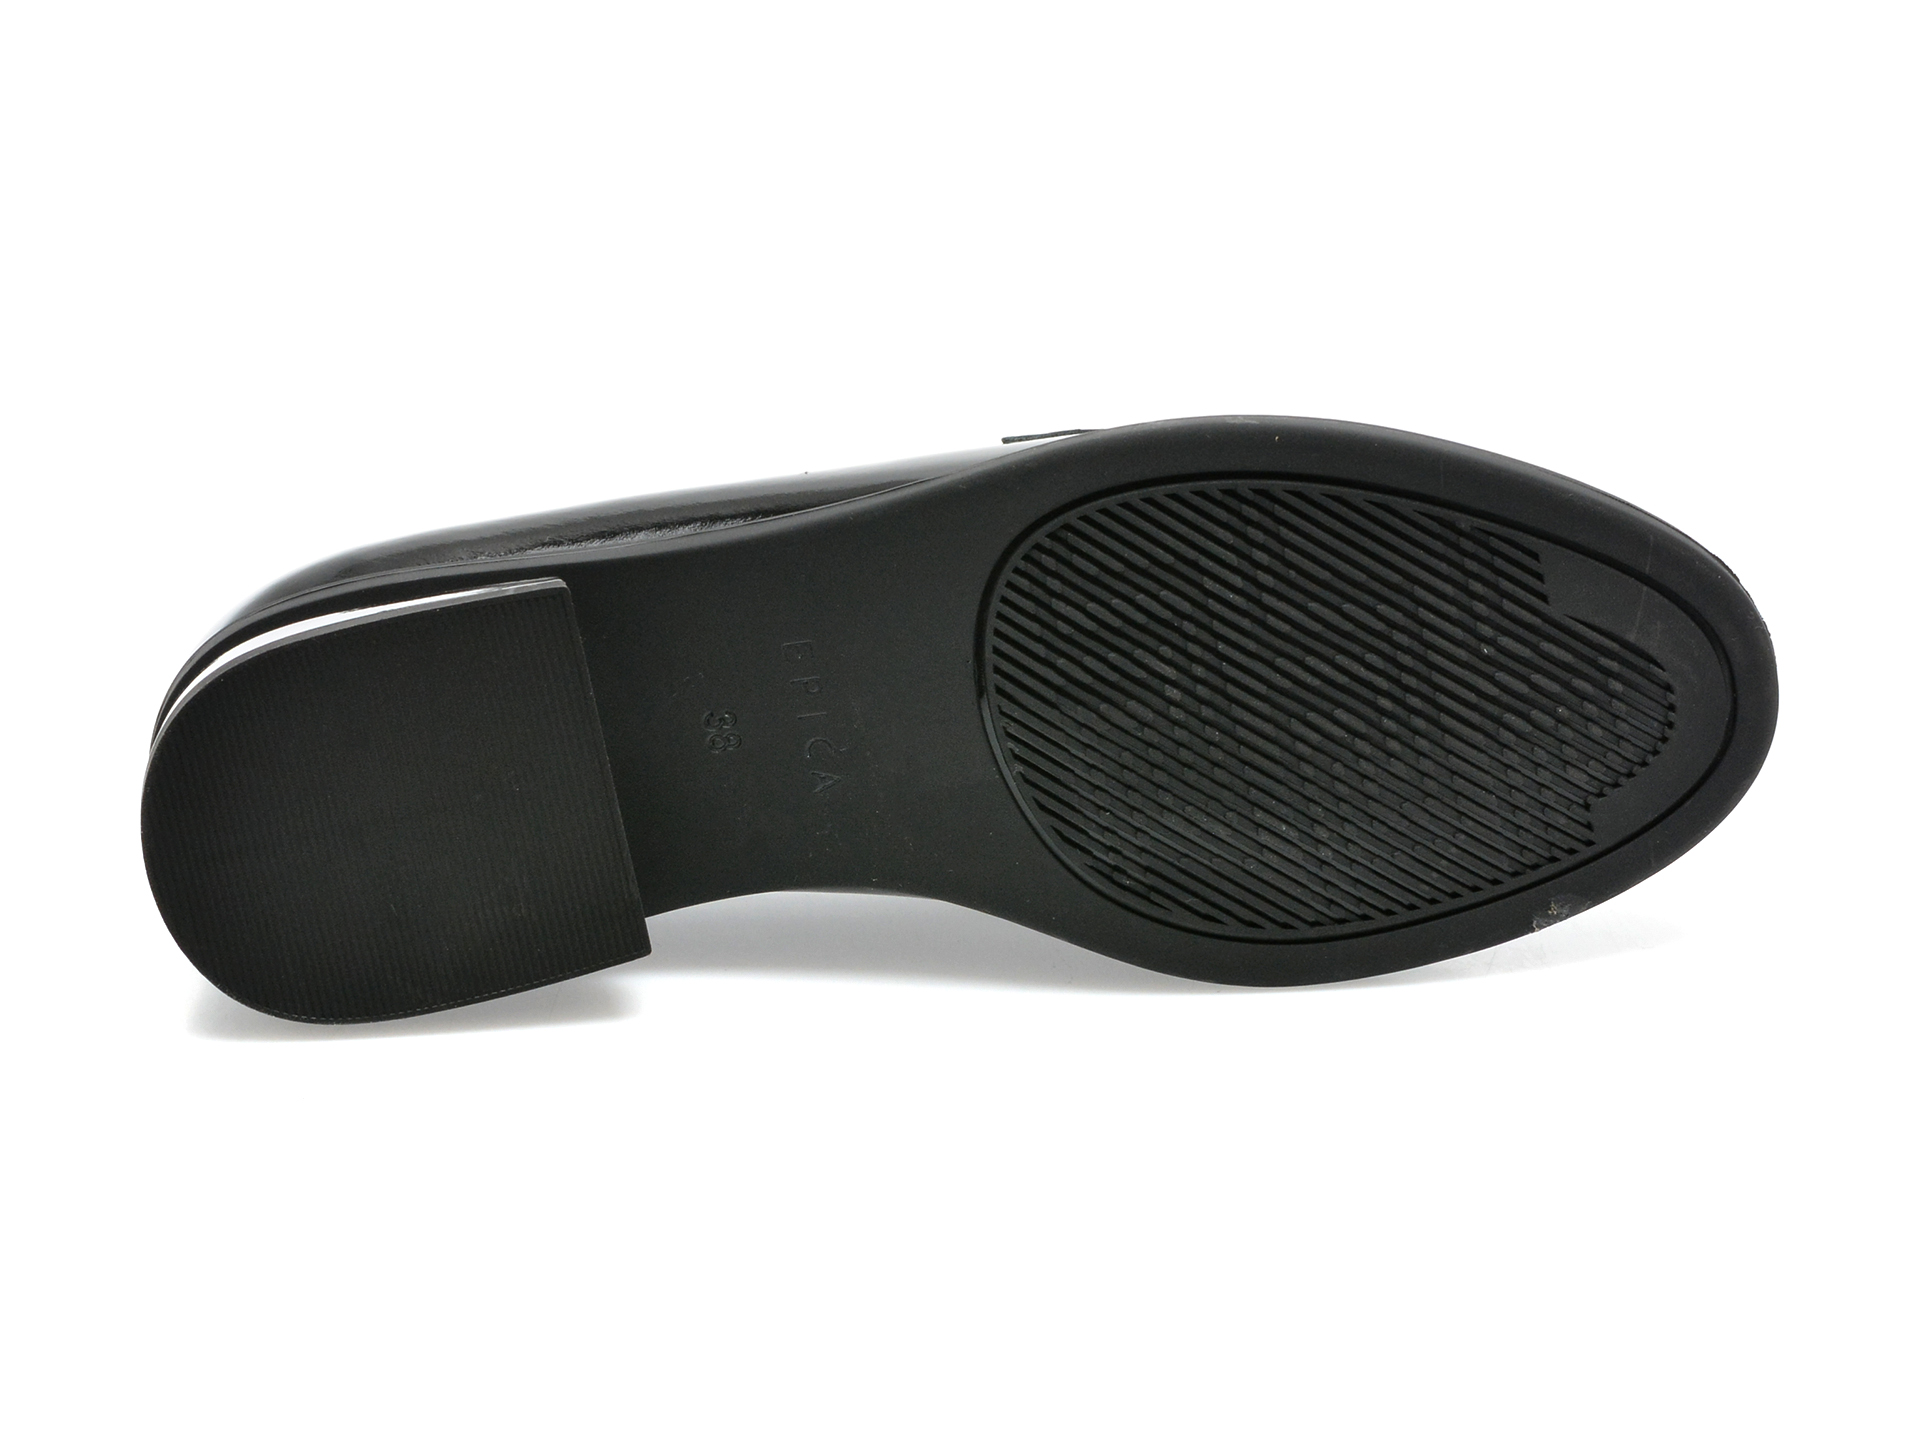 Poze Pantofi EPICA negri, B200010, din piele naturala lacuita Tezyo